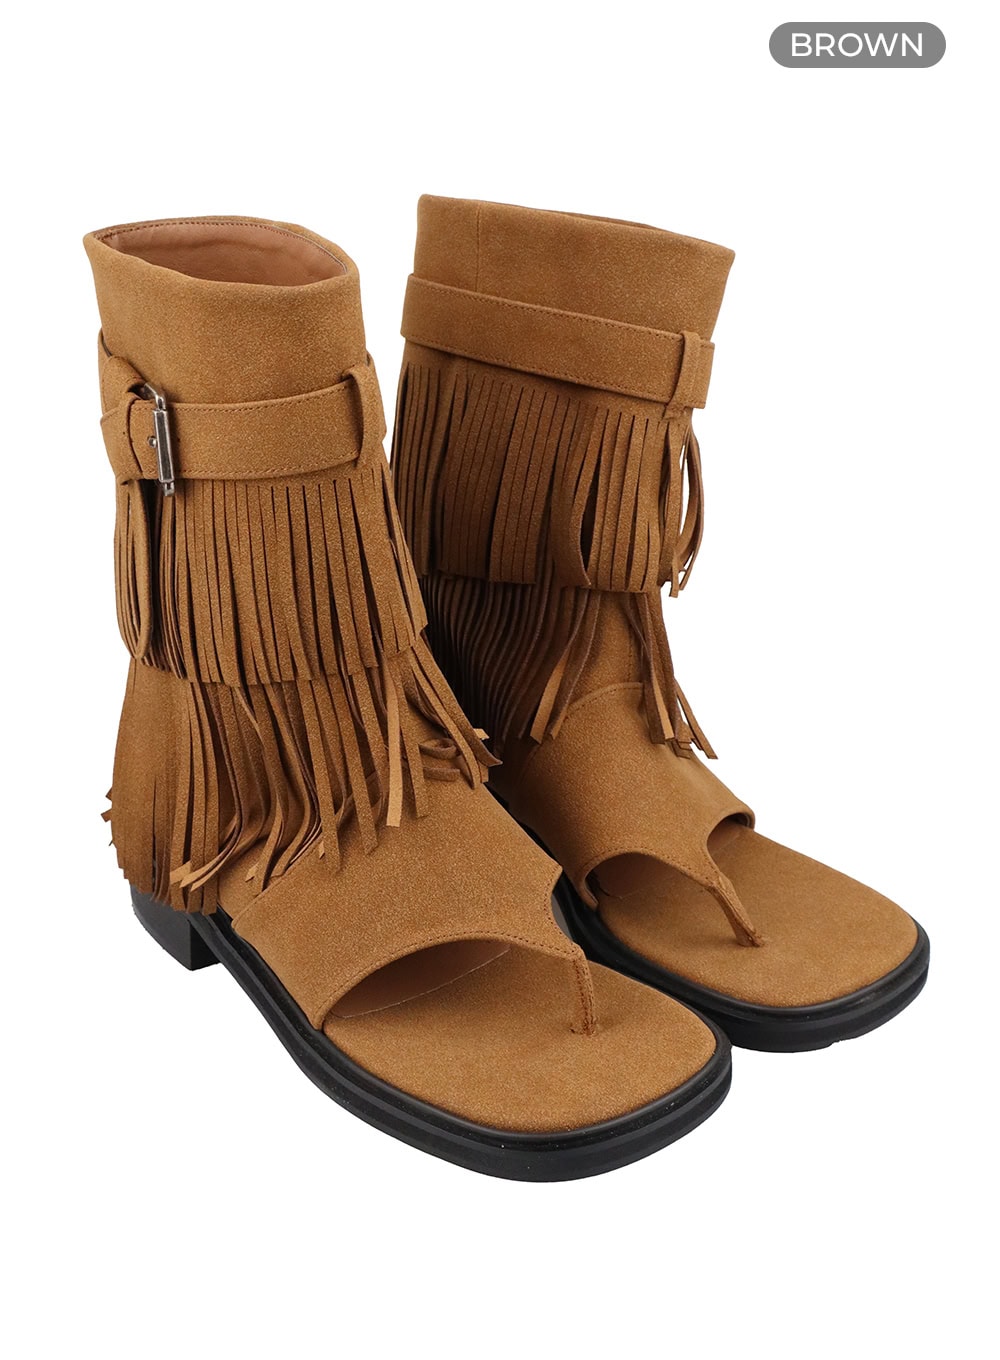 boho-buckled-fringe-boots-oa425